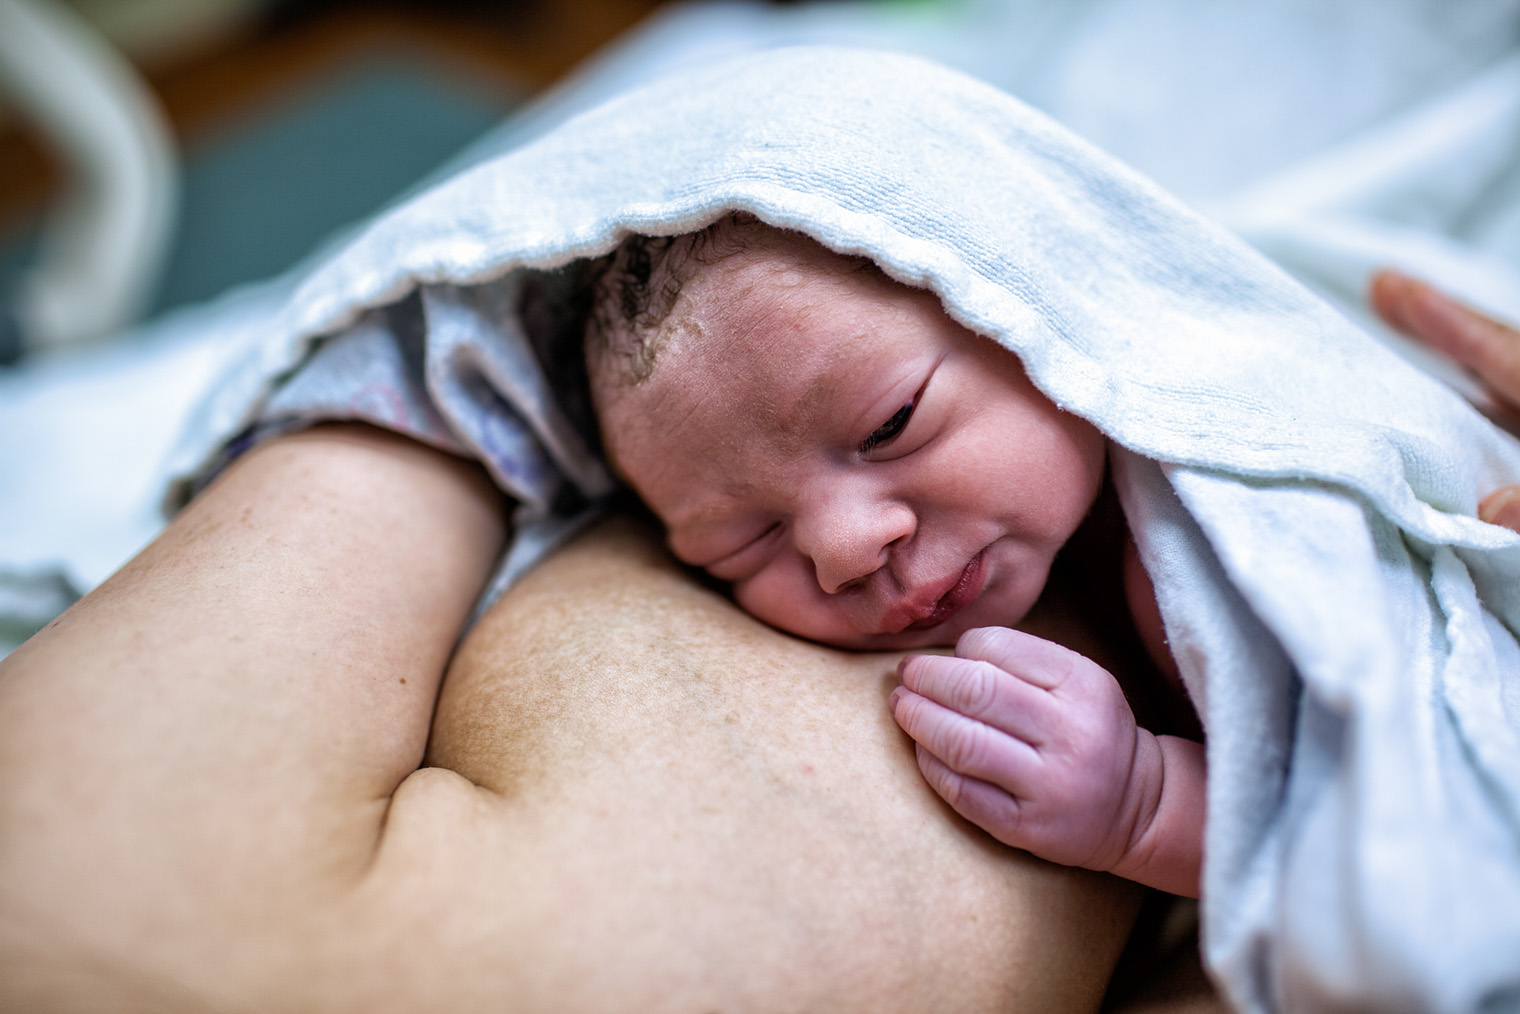 В первые минуты после рождения этому малышу удалось приоткрыть один глаз. Бывает, что из⁠-⁠за отеков век ребенок не может открыть глаза в течение суток. Фотография: Enzo Nguyen@Tercer Ojo Photography / iStock